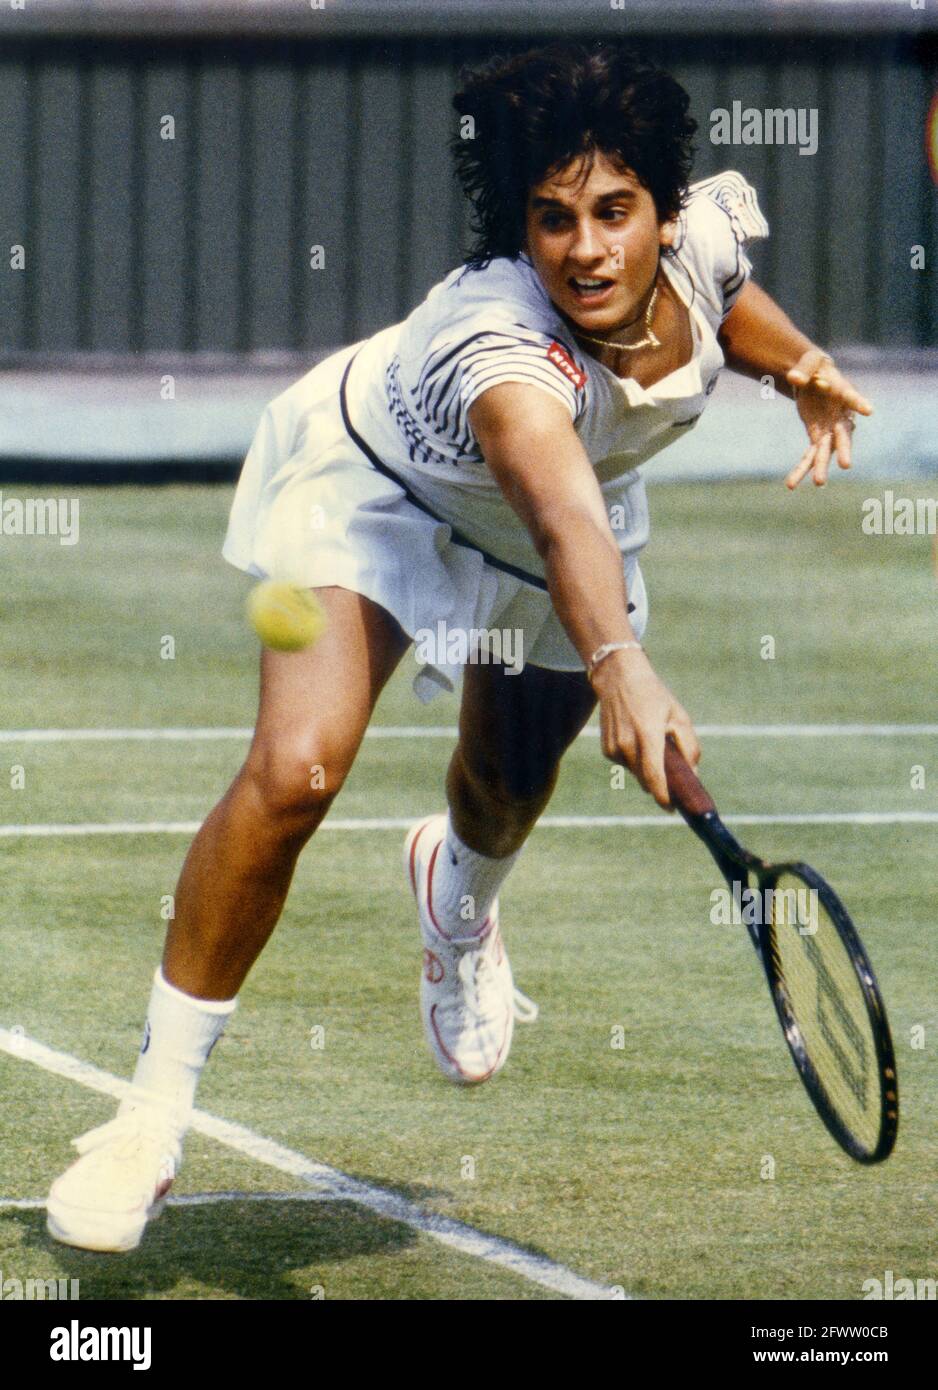 Gabriela Sabatini jouant au tournoi de tennis de Wimbledon juillet 1986. Photo de David Bagnall. Gabriela Sabatini Gaby années 1980 Banque D'Images